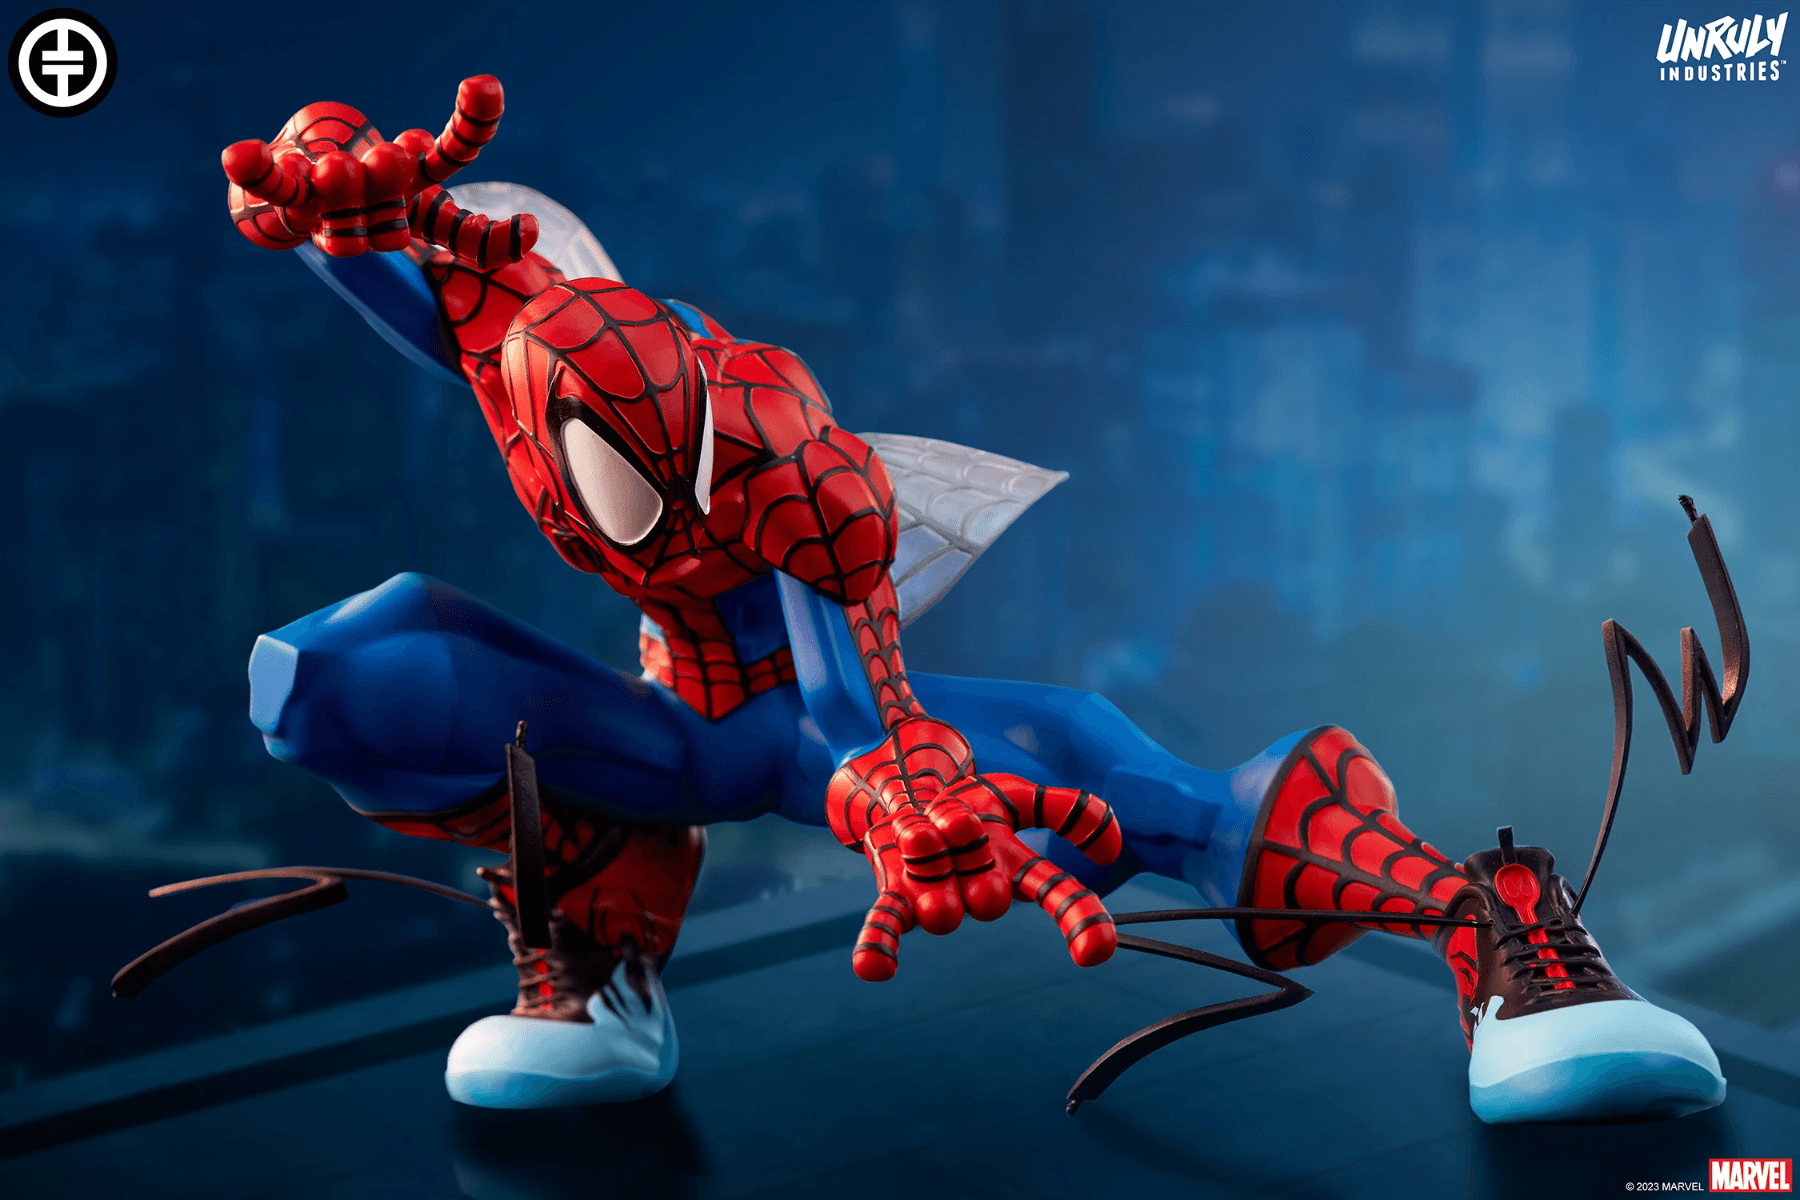 UNR700227 Spider-Man - Spider-Man Designer Statue - Unruly Industries - Titan Pop Culture